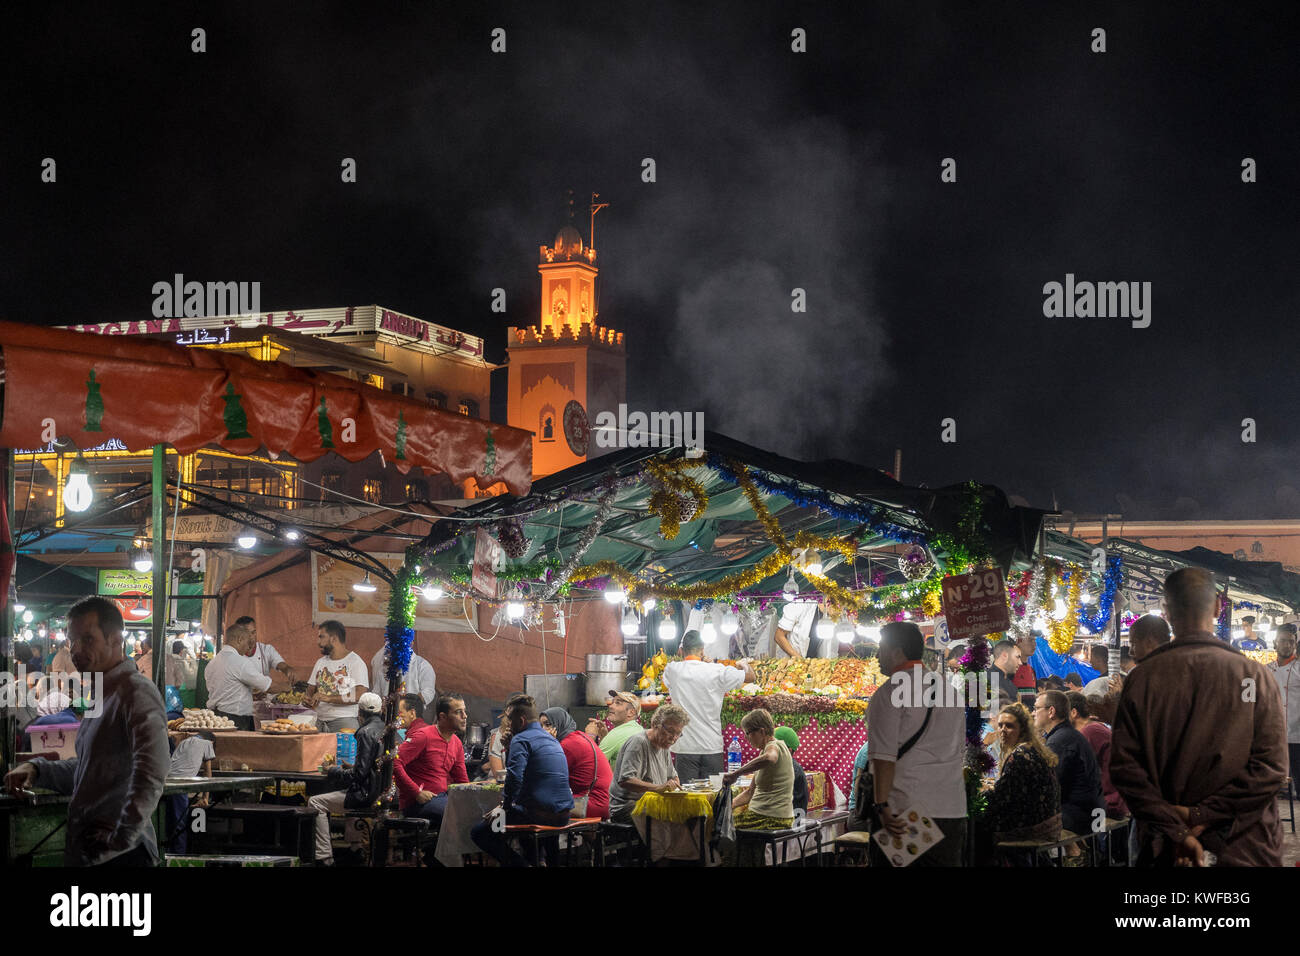 Cenare al fresco presso i ristoranti all'aperto in Piazza, Marrakech. Foto Stock